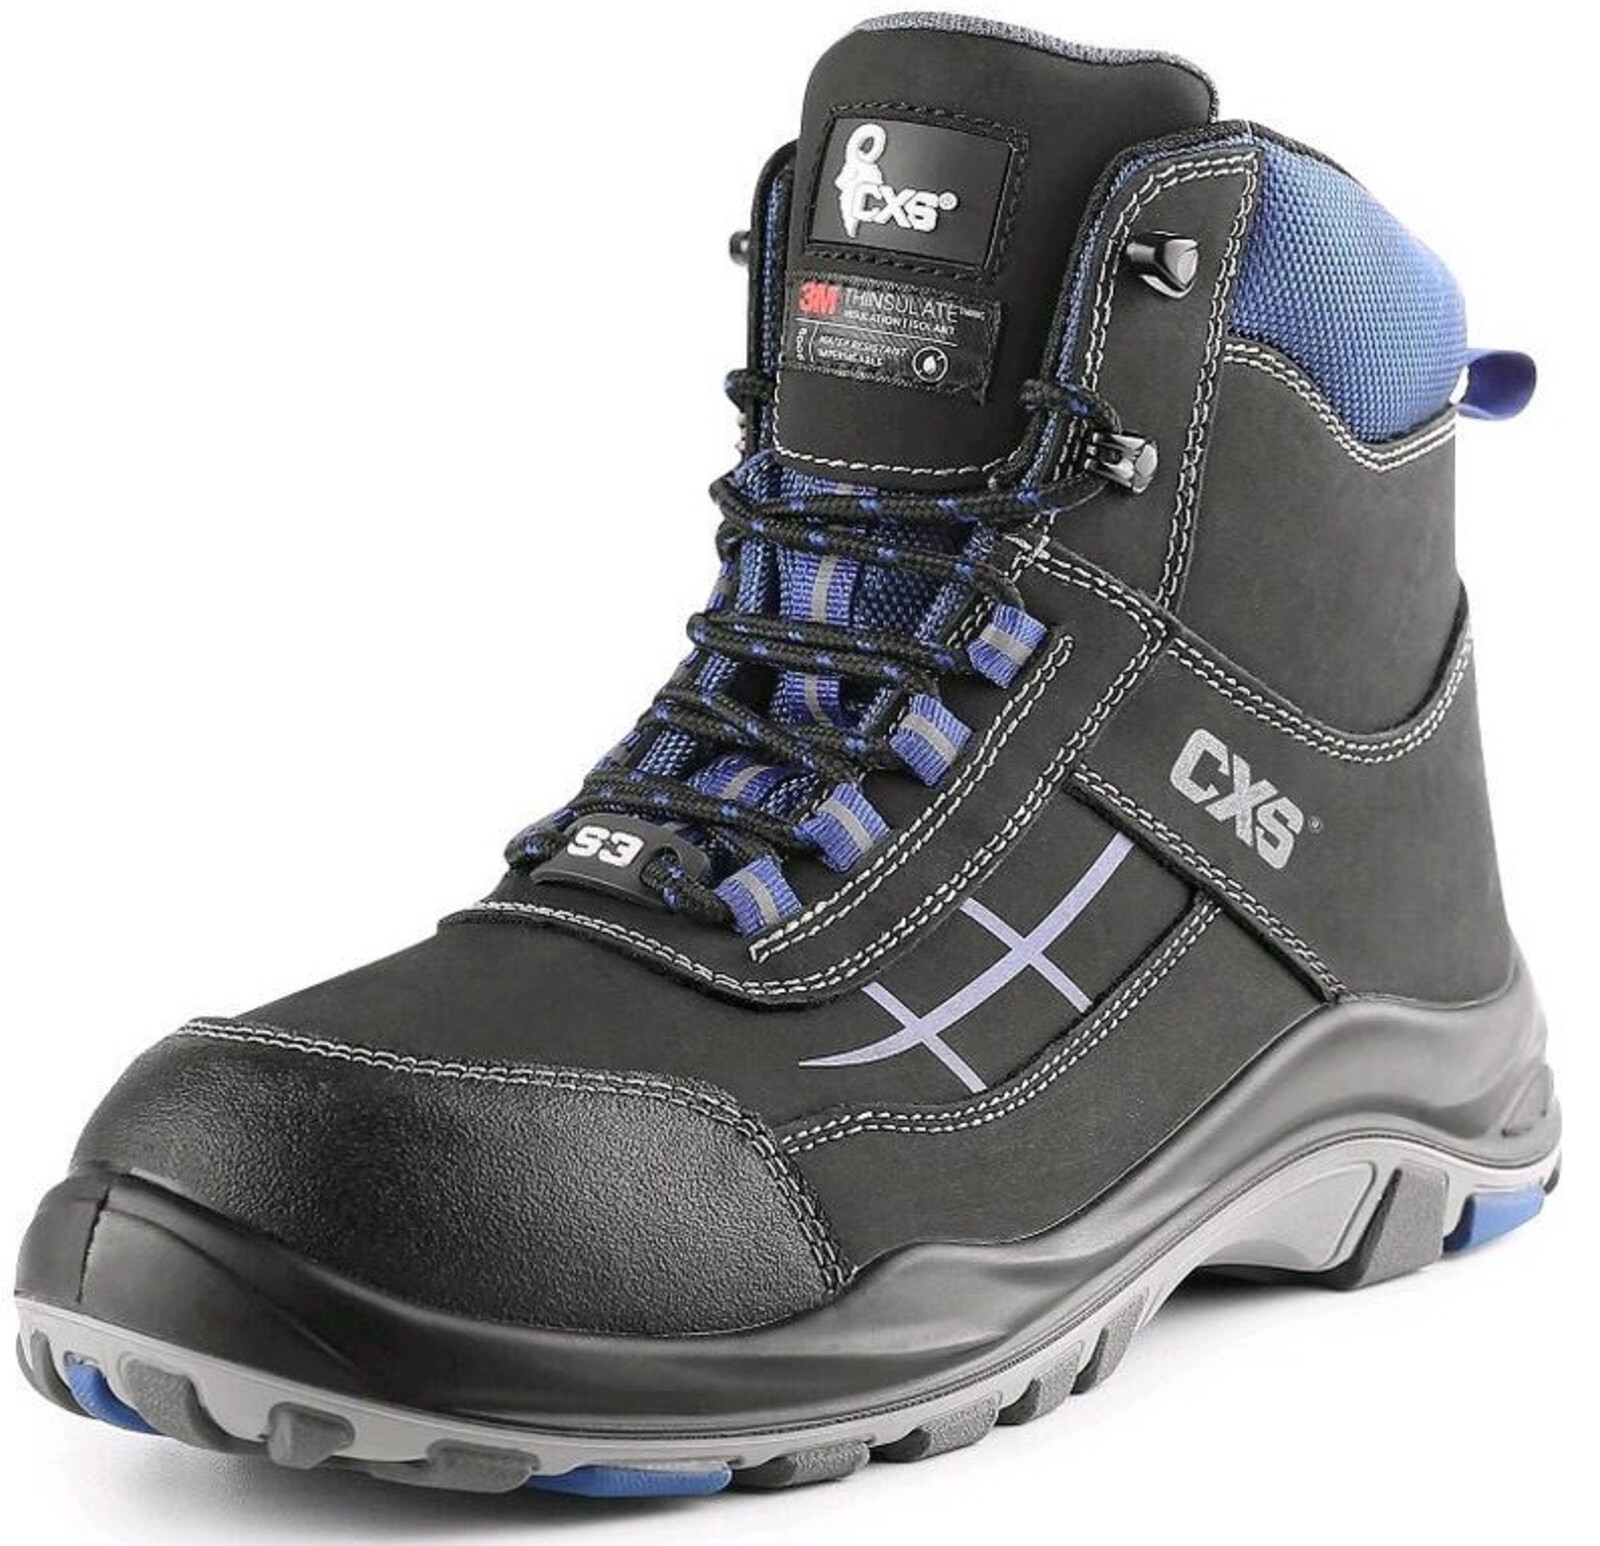 Zateplená bezpečnostná členková obuv CXS Dog Malamute S3 CI SRC - veľkosť: 43, farba: čierna/modrá